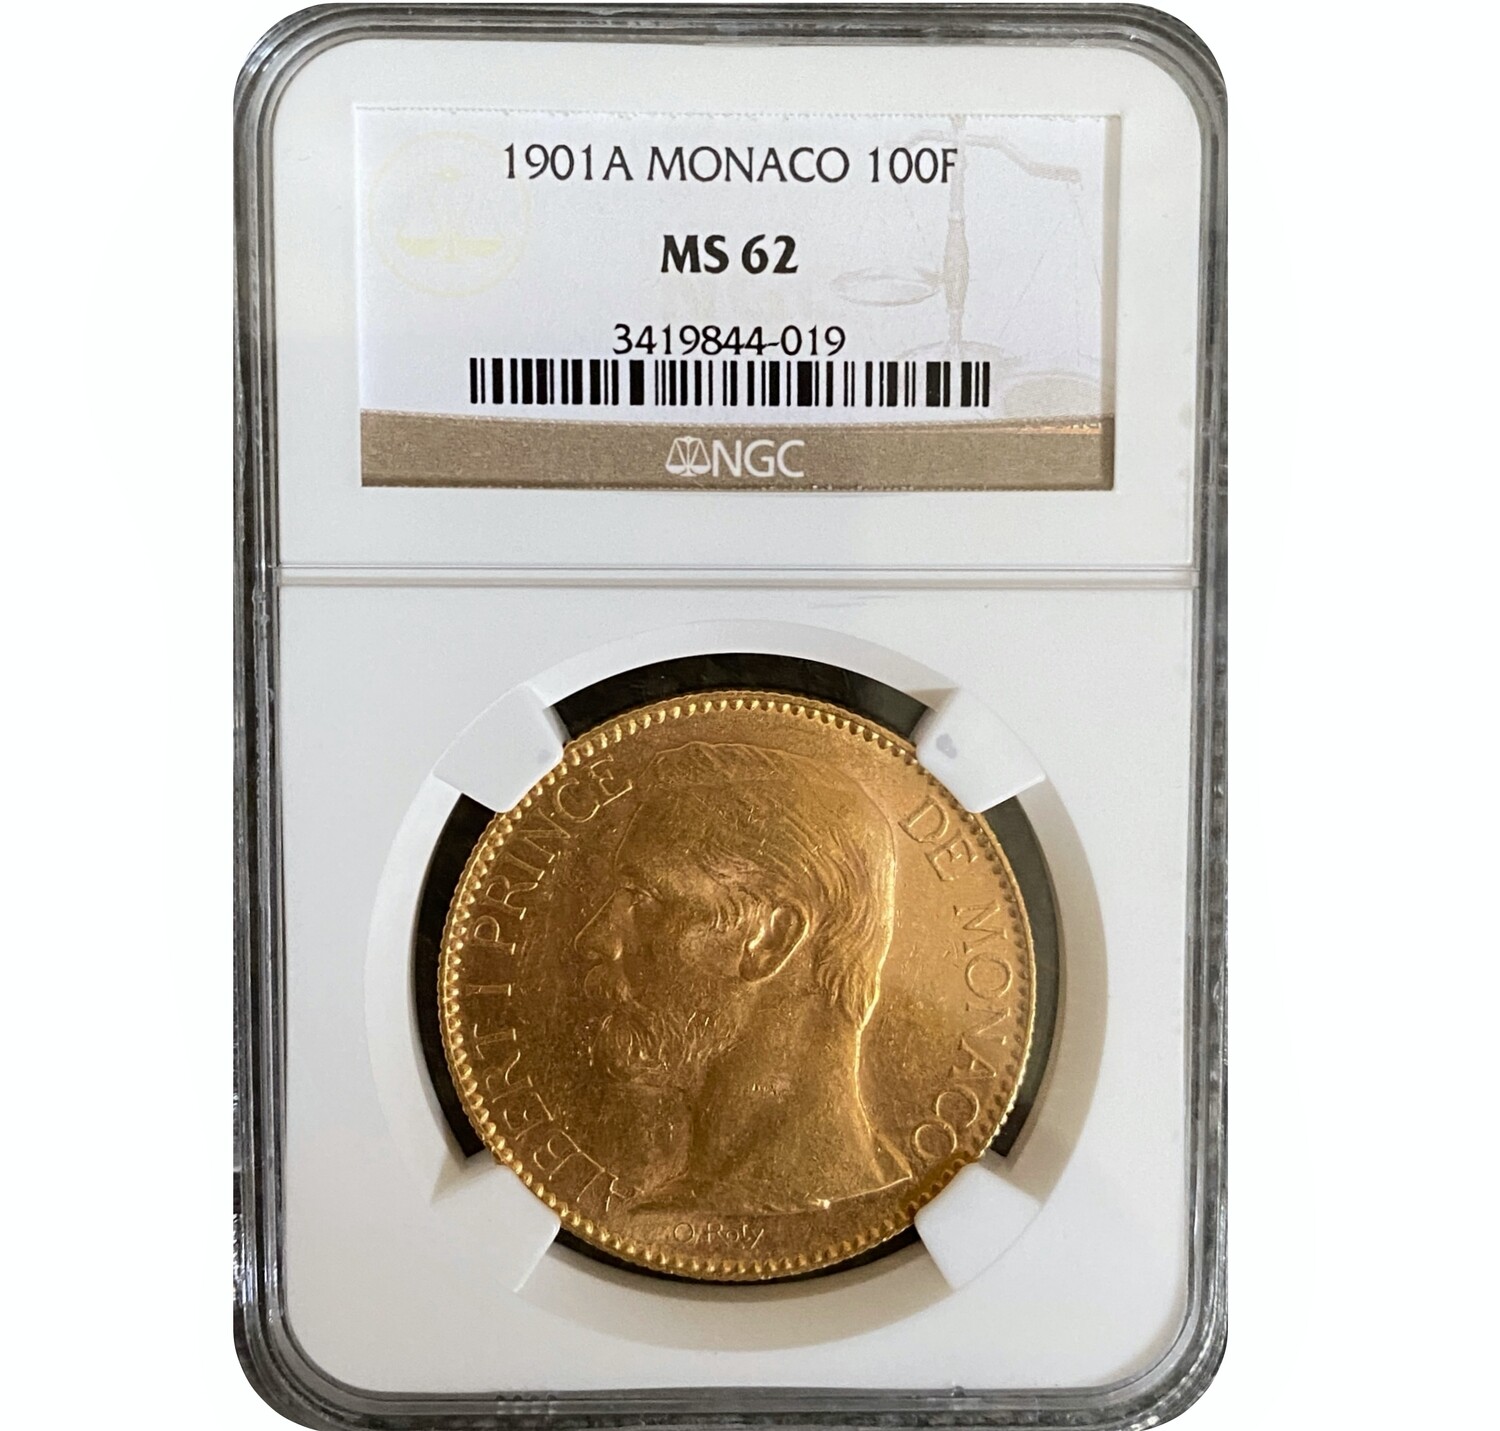 1901A Albert I Monaco gold 100 francs